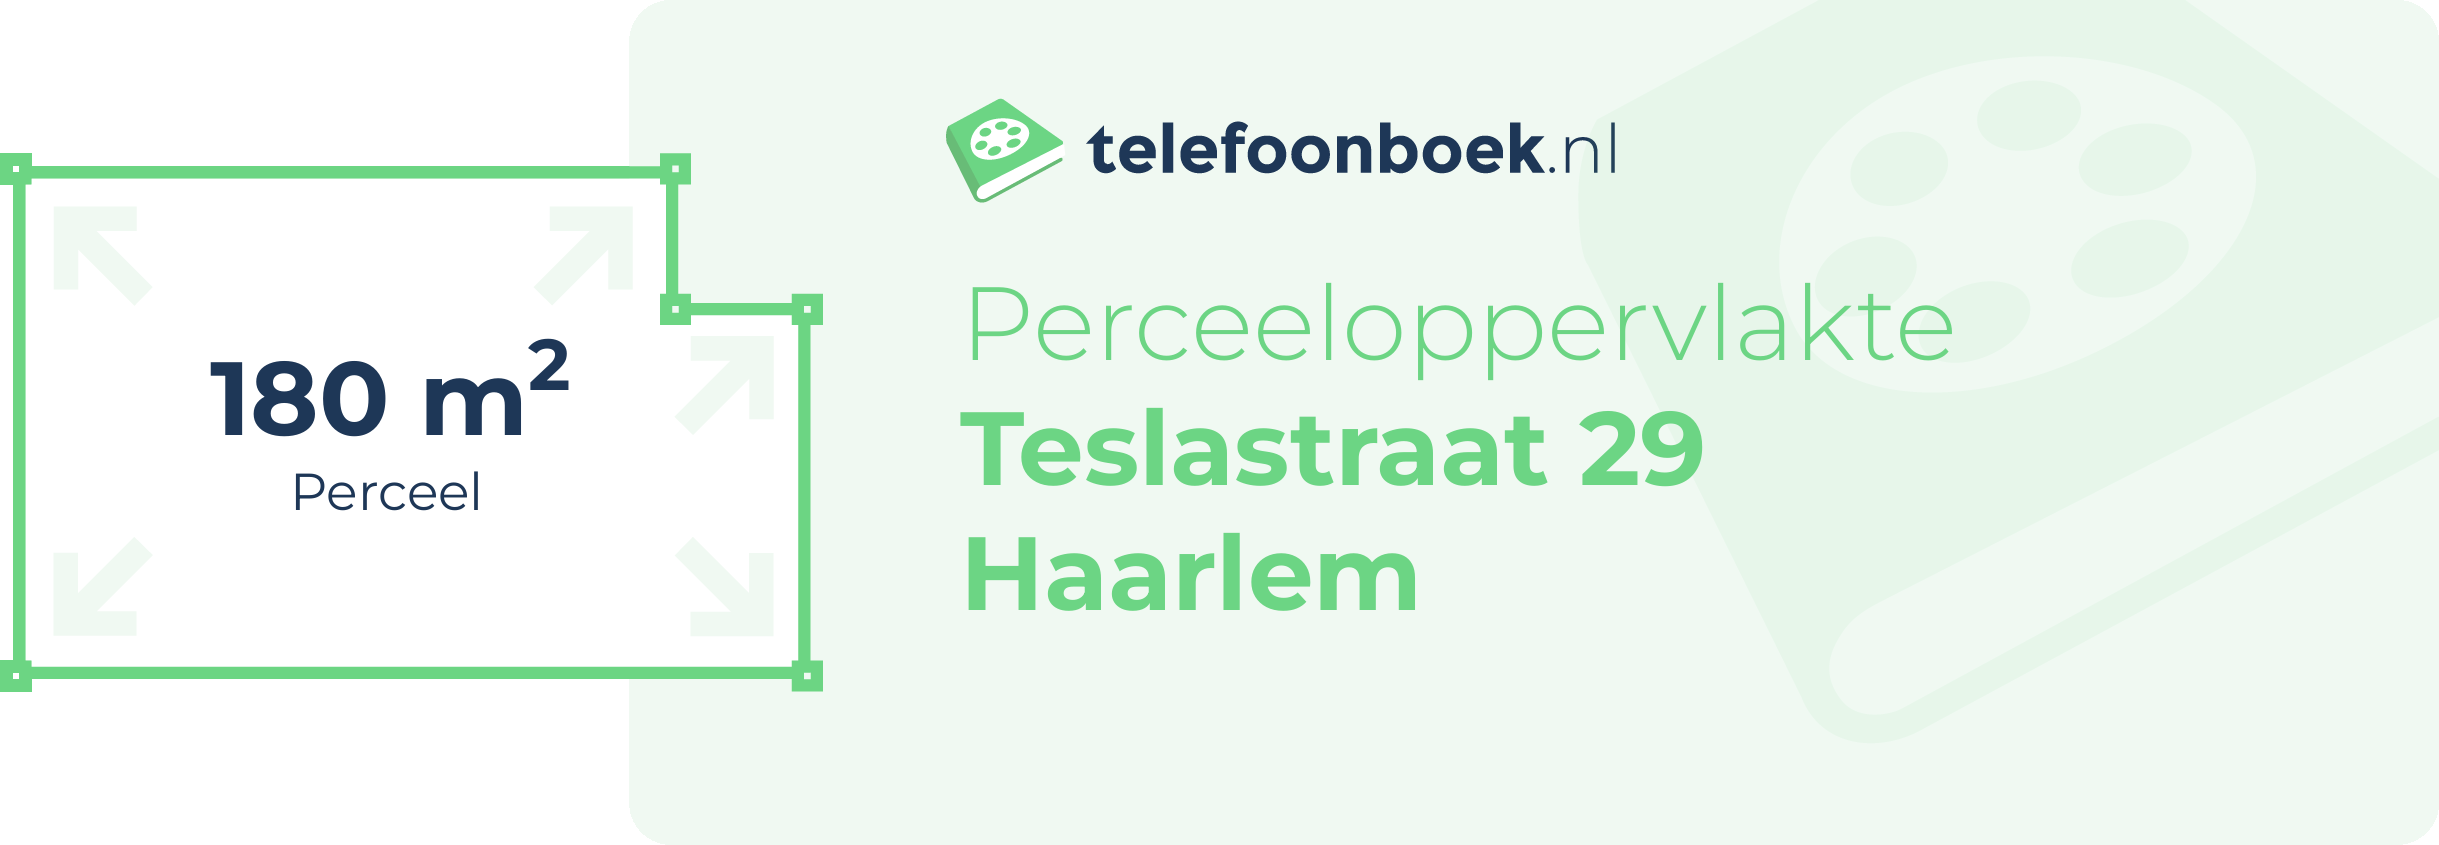 Perceeloppervlakte Teslastraat 29 Haarlem